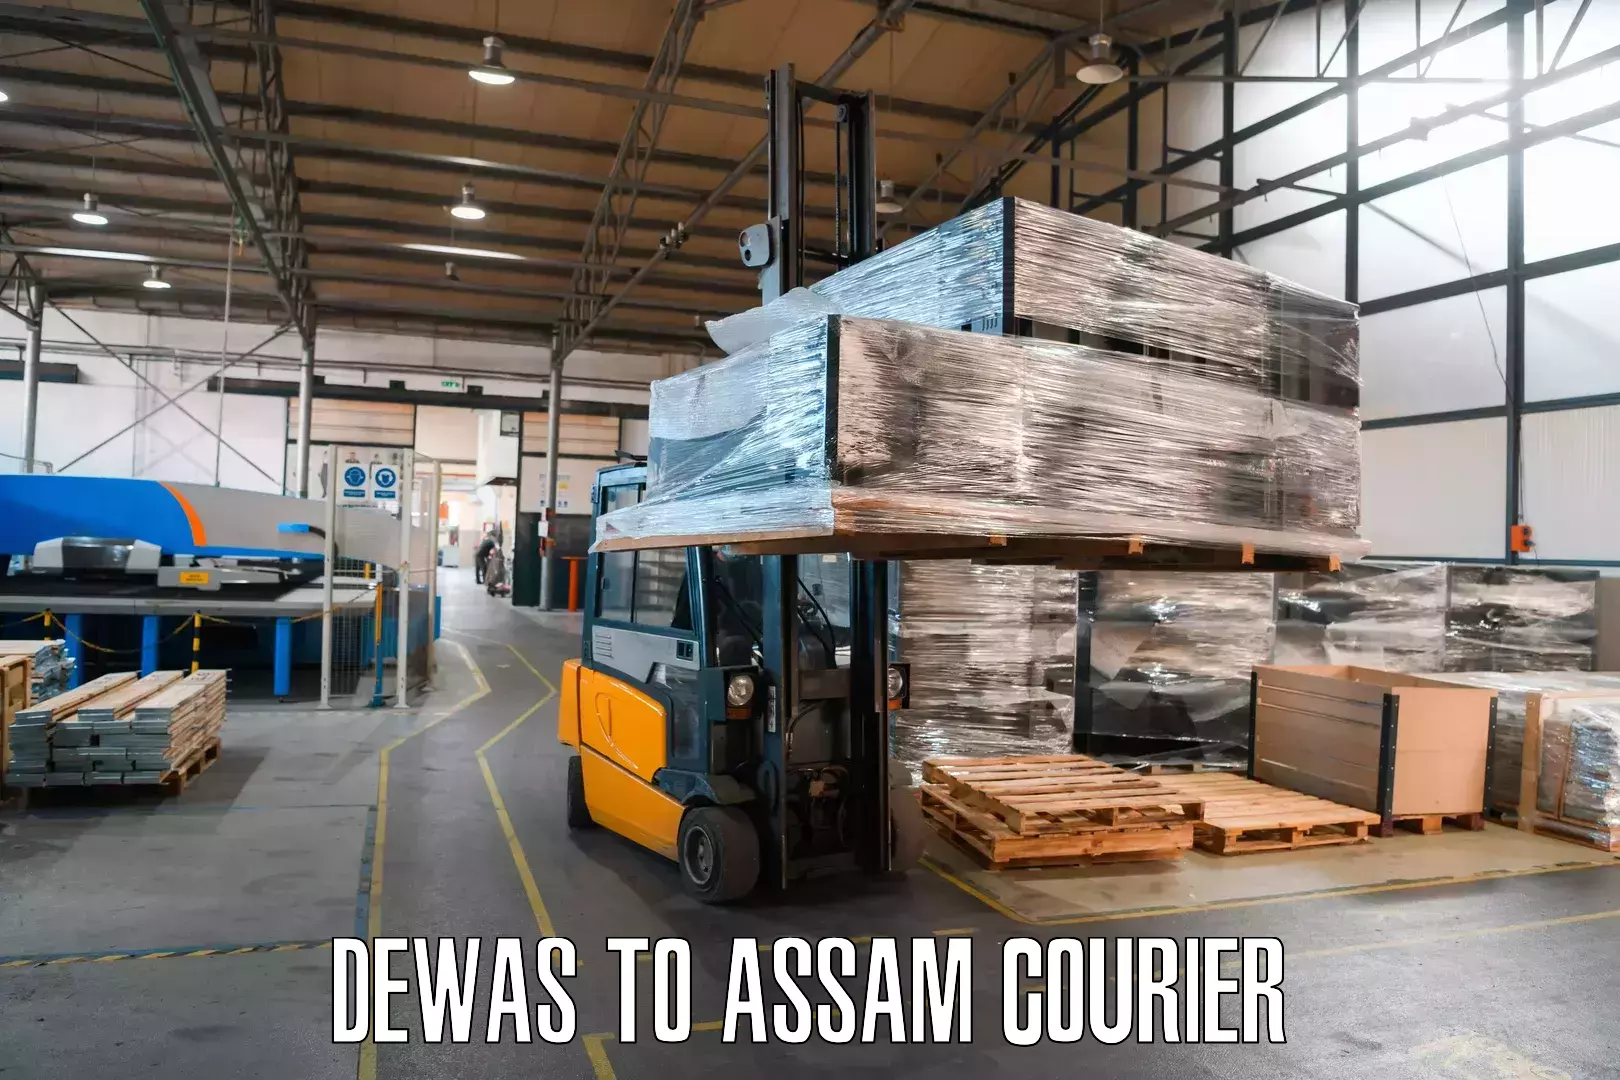 Courier service comparison Dewas to Assam